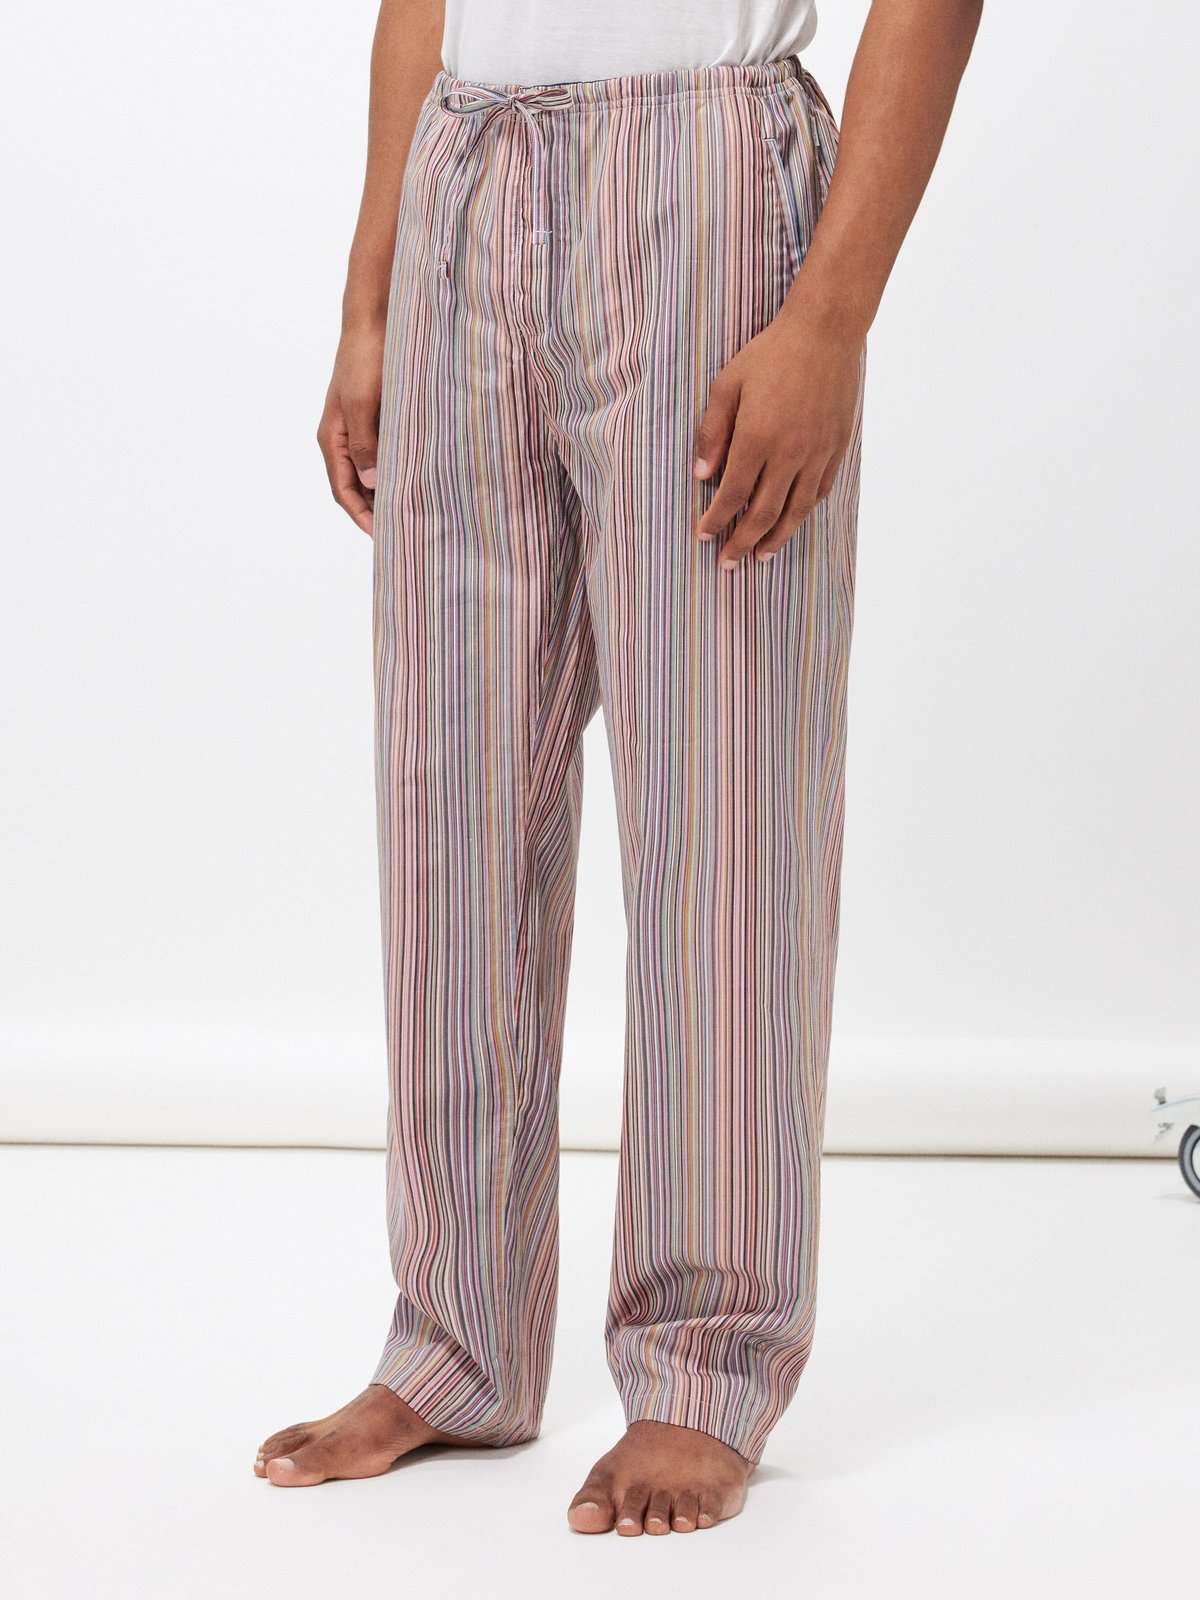 Пижамные брюки из хлопка с фирменными полосками